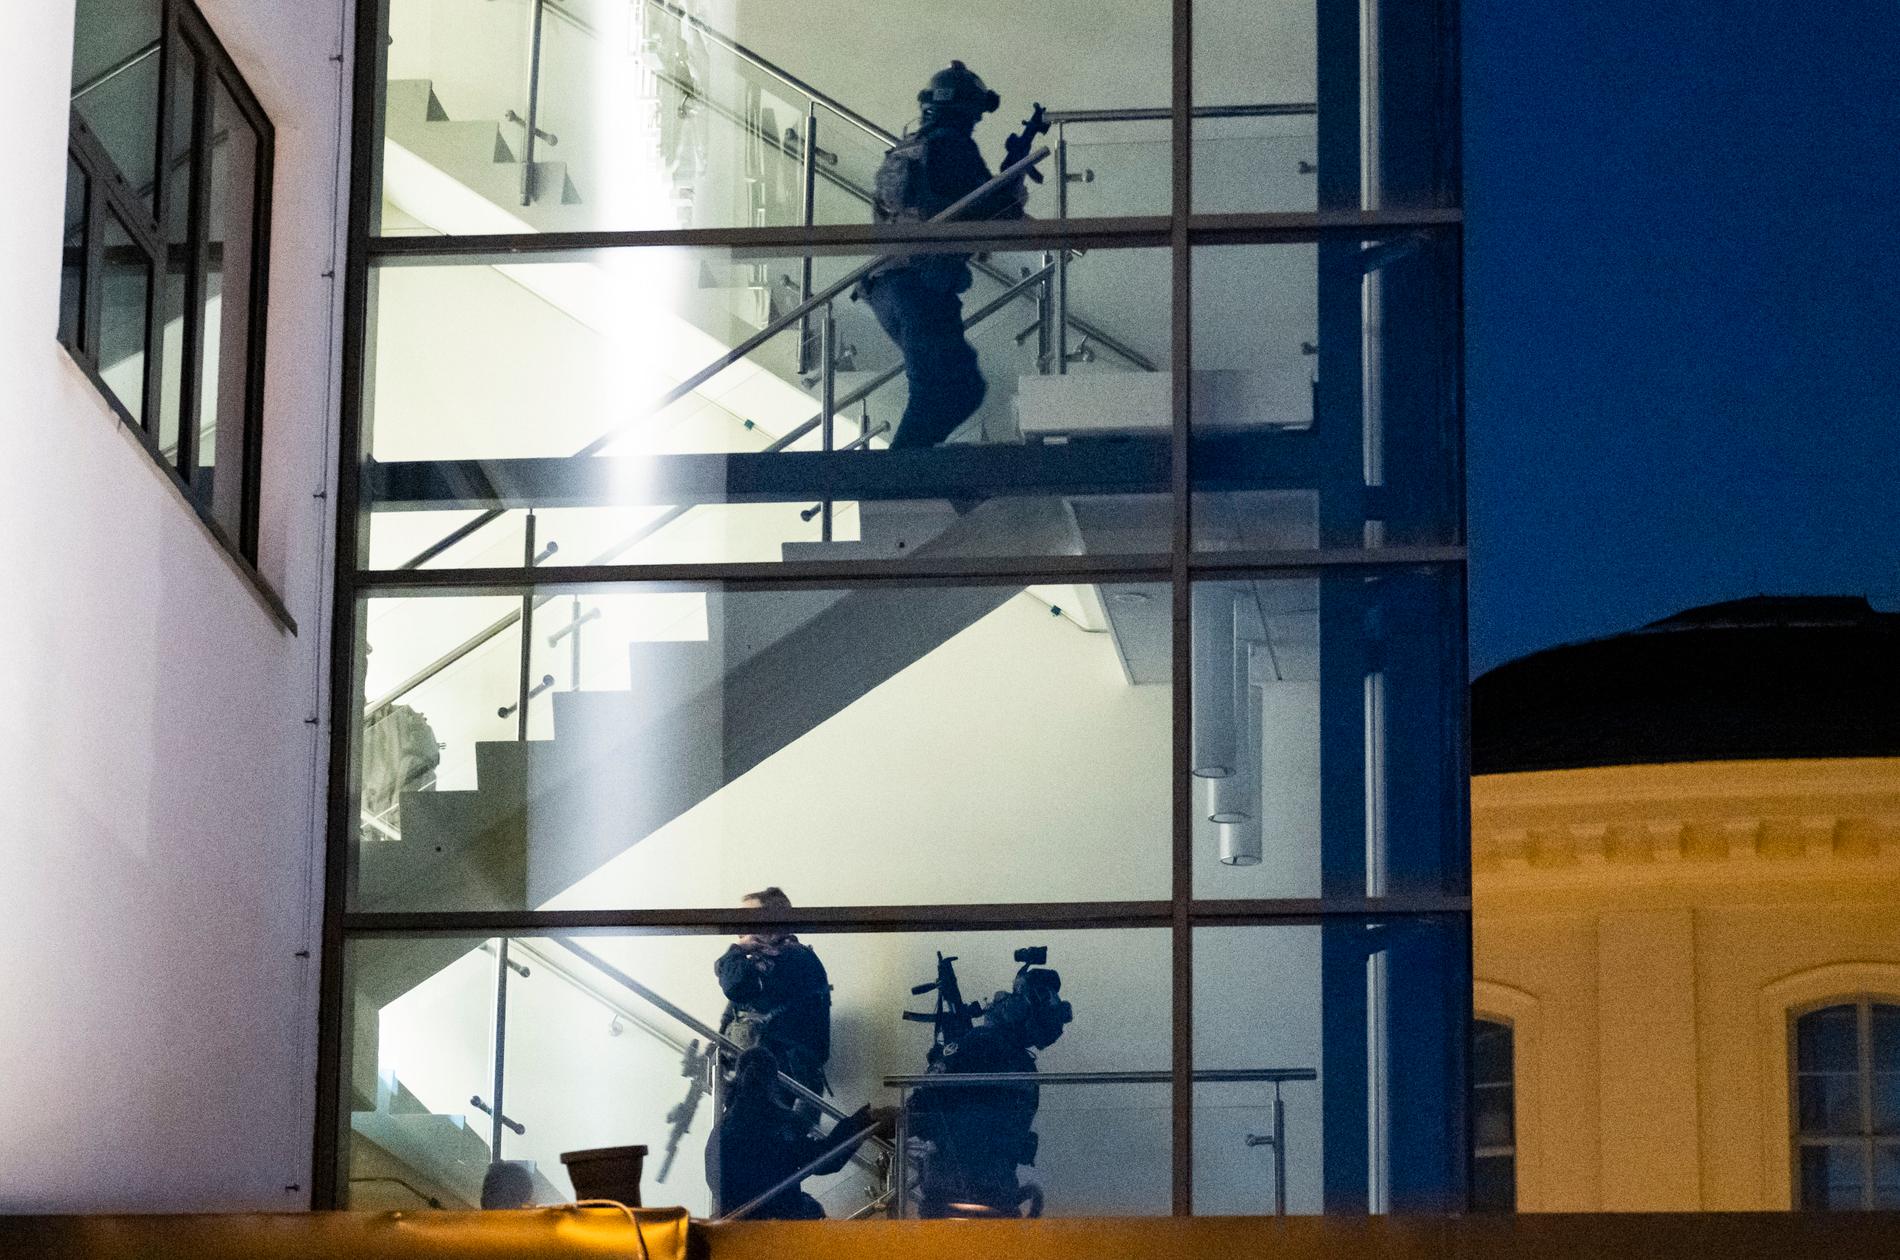 Attacken på skolan i Malmö ska ha skett på tredje våningen, enligt uppgifter.